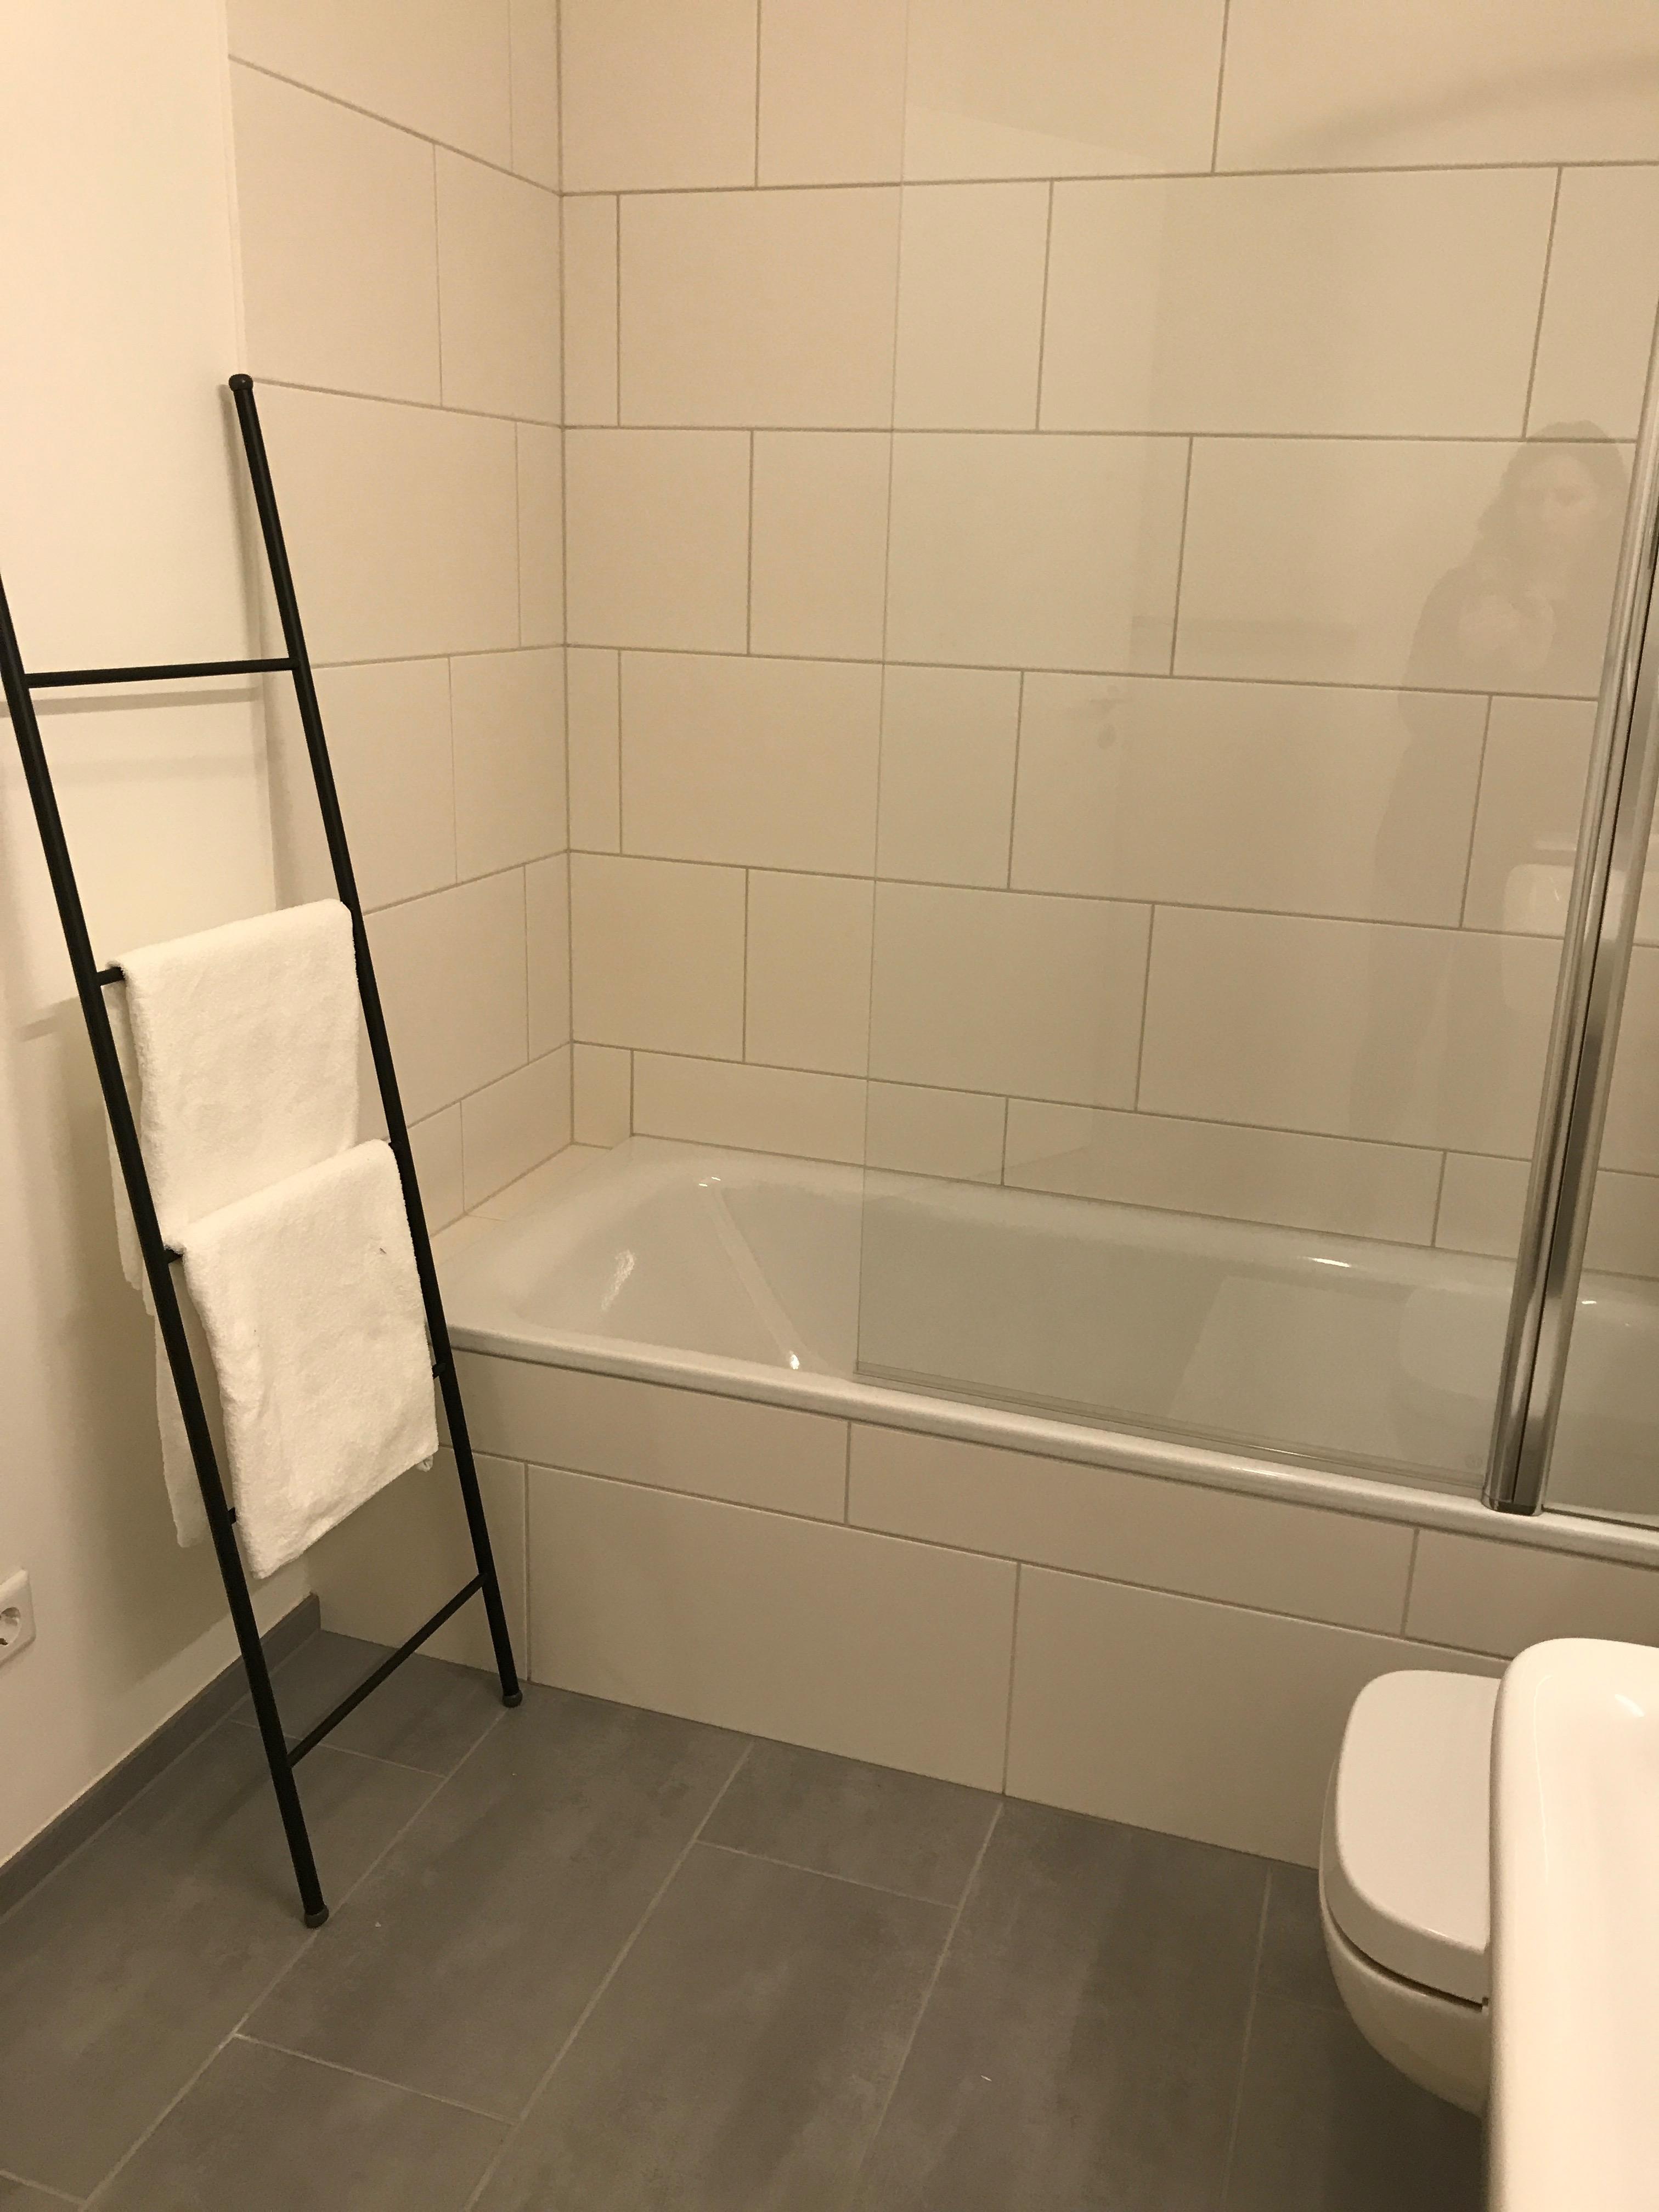 Badezimmer mit Wanne alles Weiß #badewanne #badezimmer ©Miracle Room